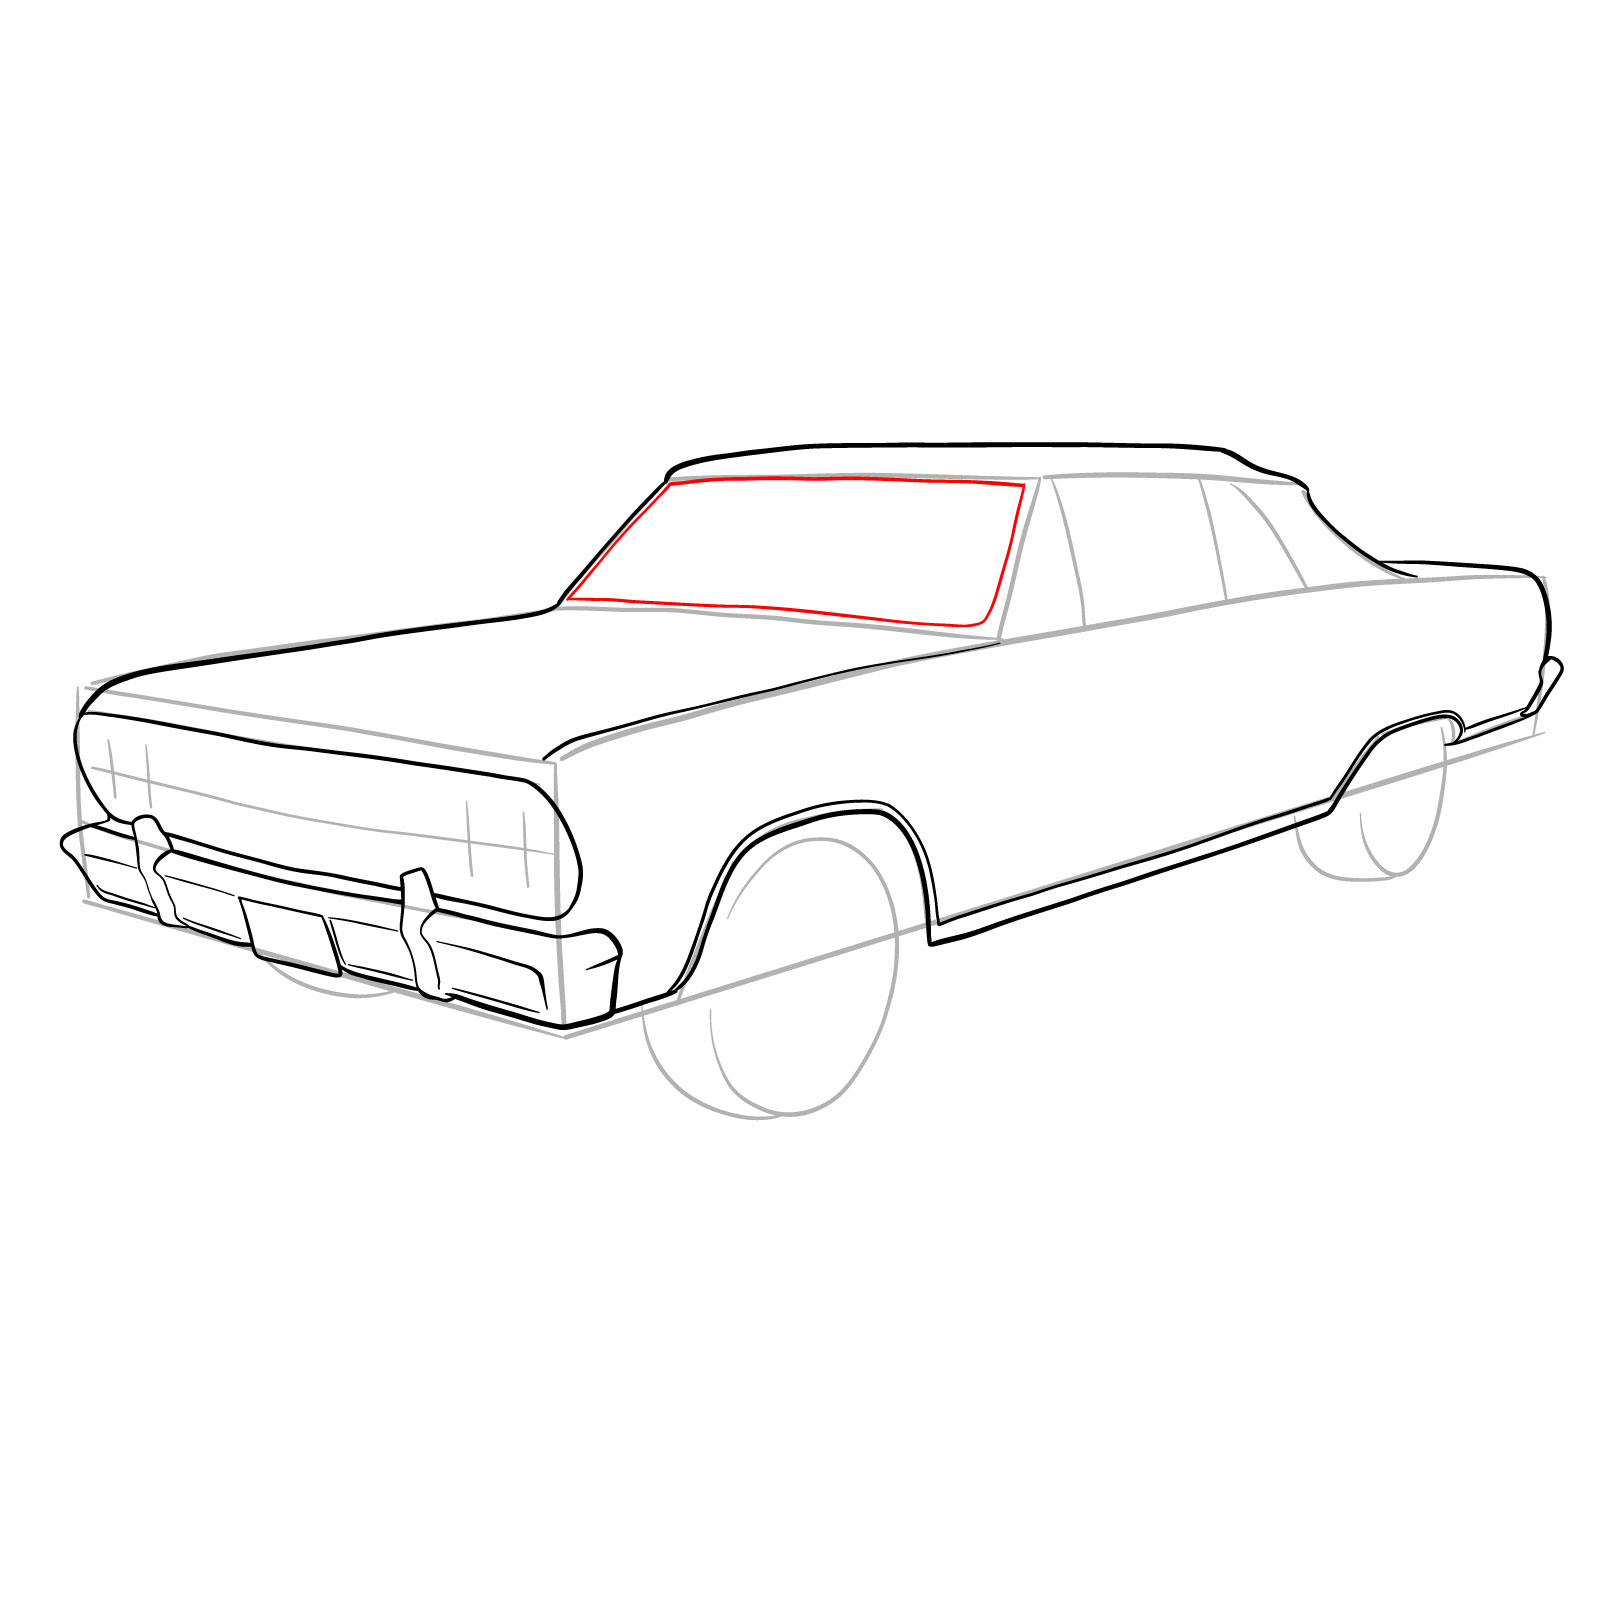 How to draw 1964 Chevrolet Malibu - step 17